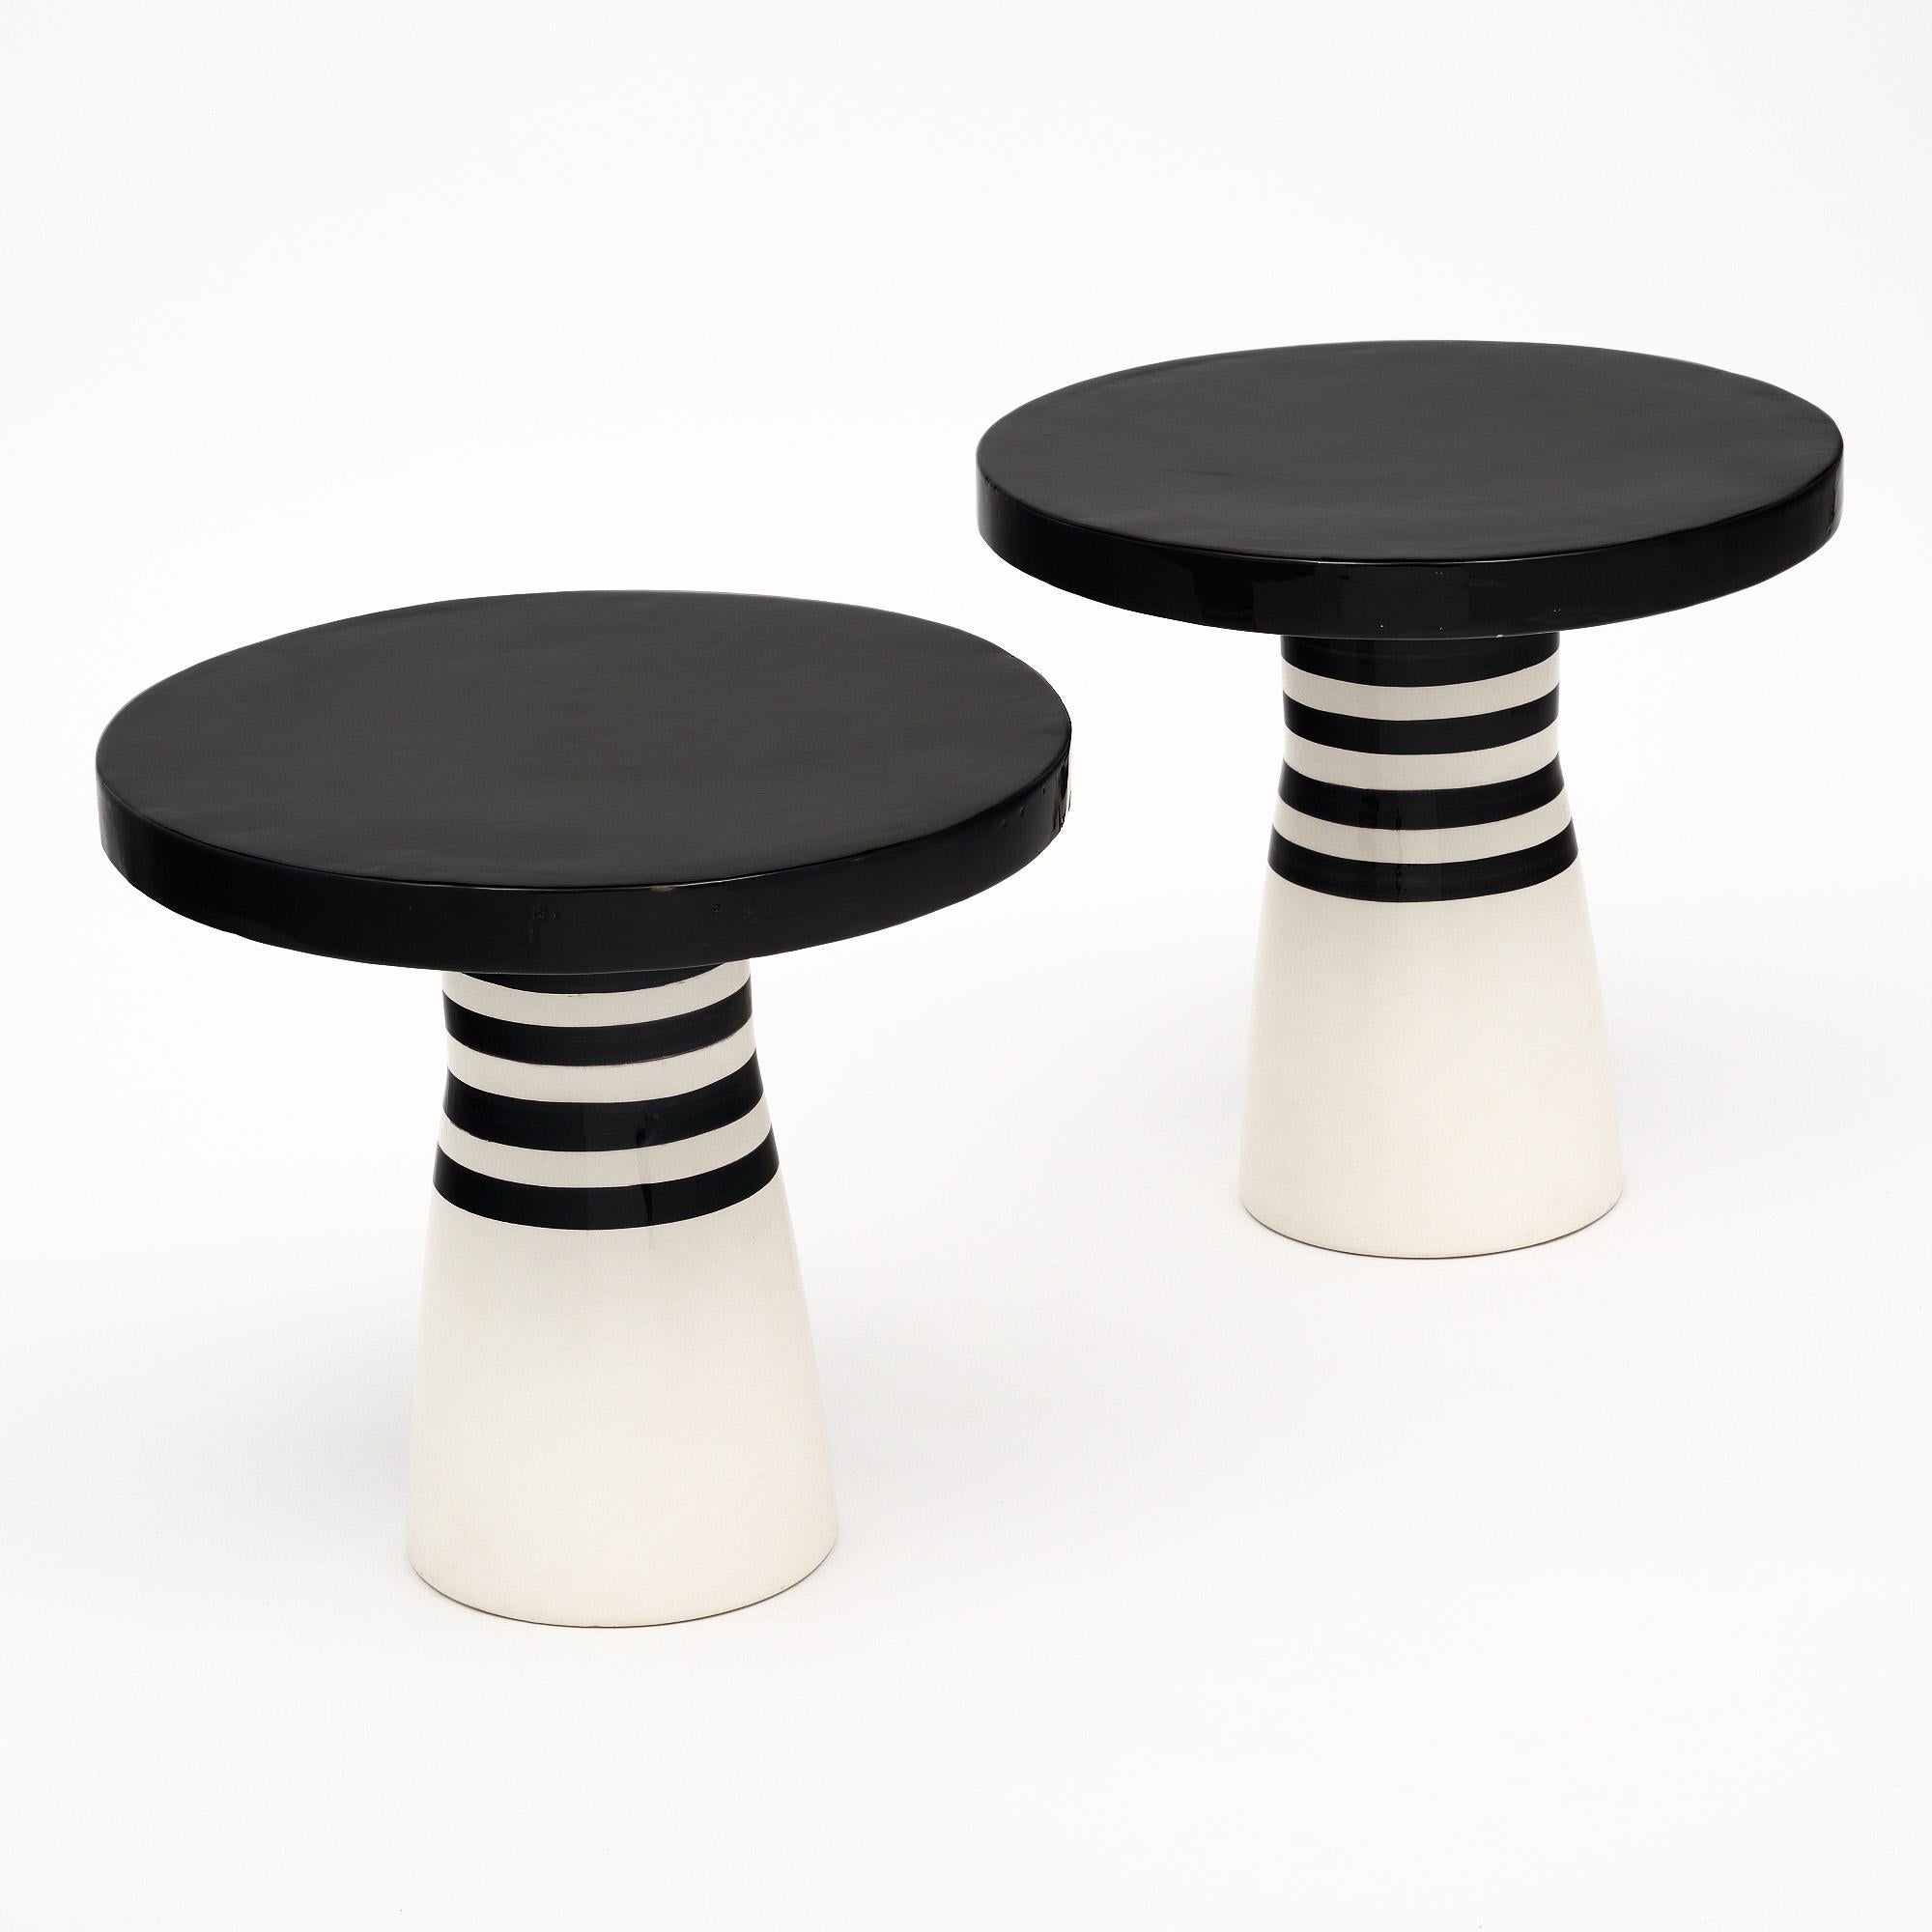 Ein Paar Beistelltische aus Frankreich mit einzigartigem schwarz-weißem Design. Wir lieben die geometrische Wirkung der farblich unterbrochenen Linien und die ins Auge fallende Einfachheit der Form. Die Tische sind vollständig aus Keramik gefertigt.
